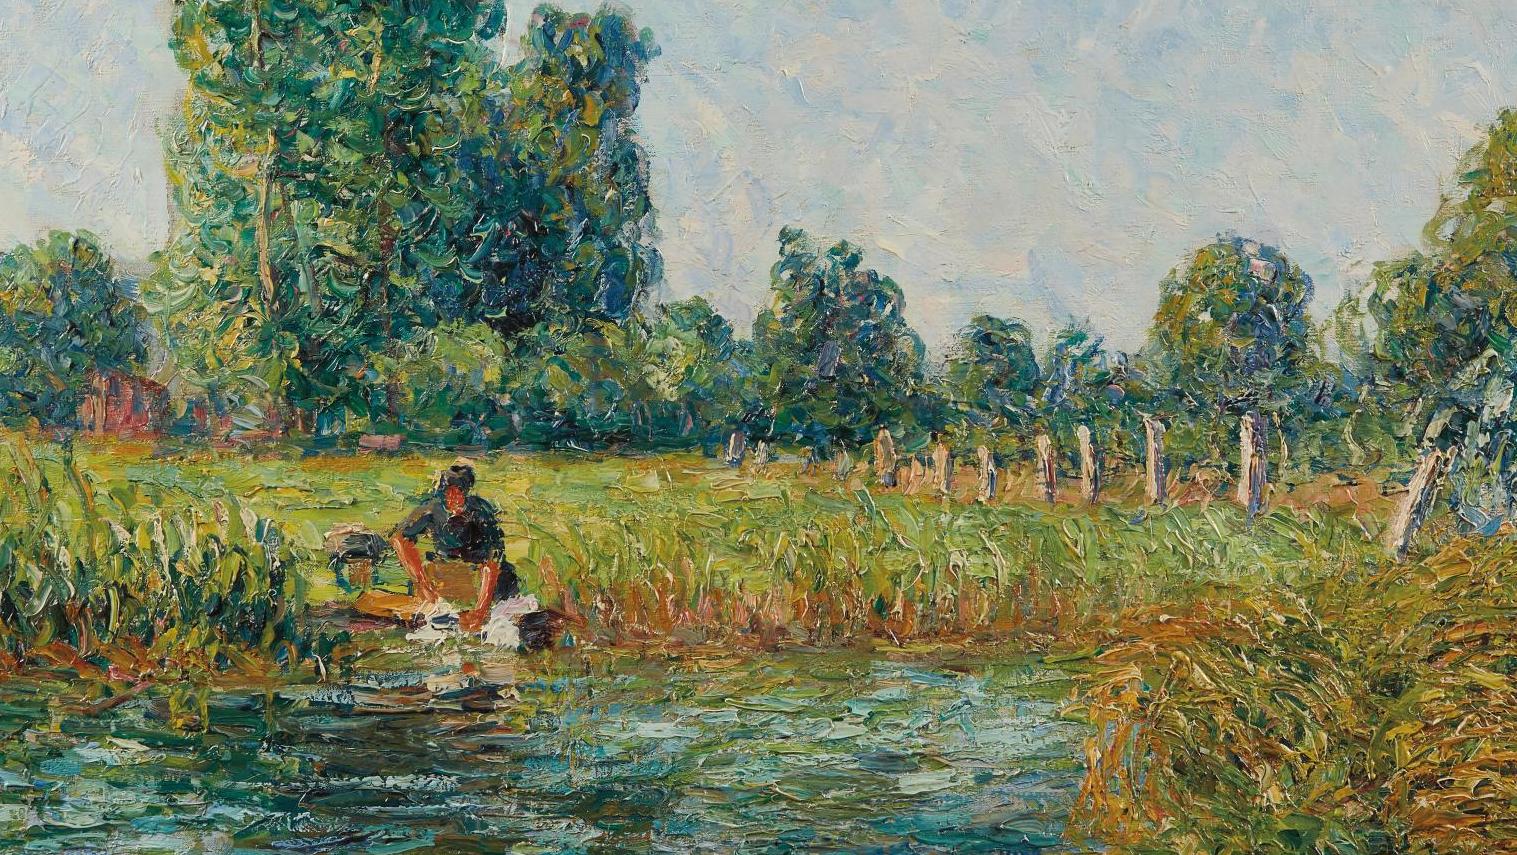 Francis Picabia (1879-1953), La Laveuse, Villeneuve-sur-Yonne, 1906, huile sur toile,... Un labeur ensoleillé par Picabia